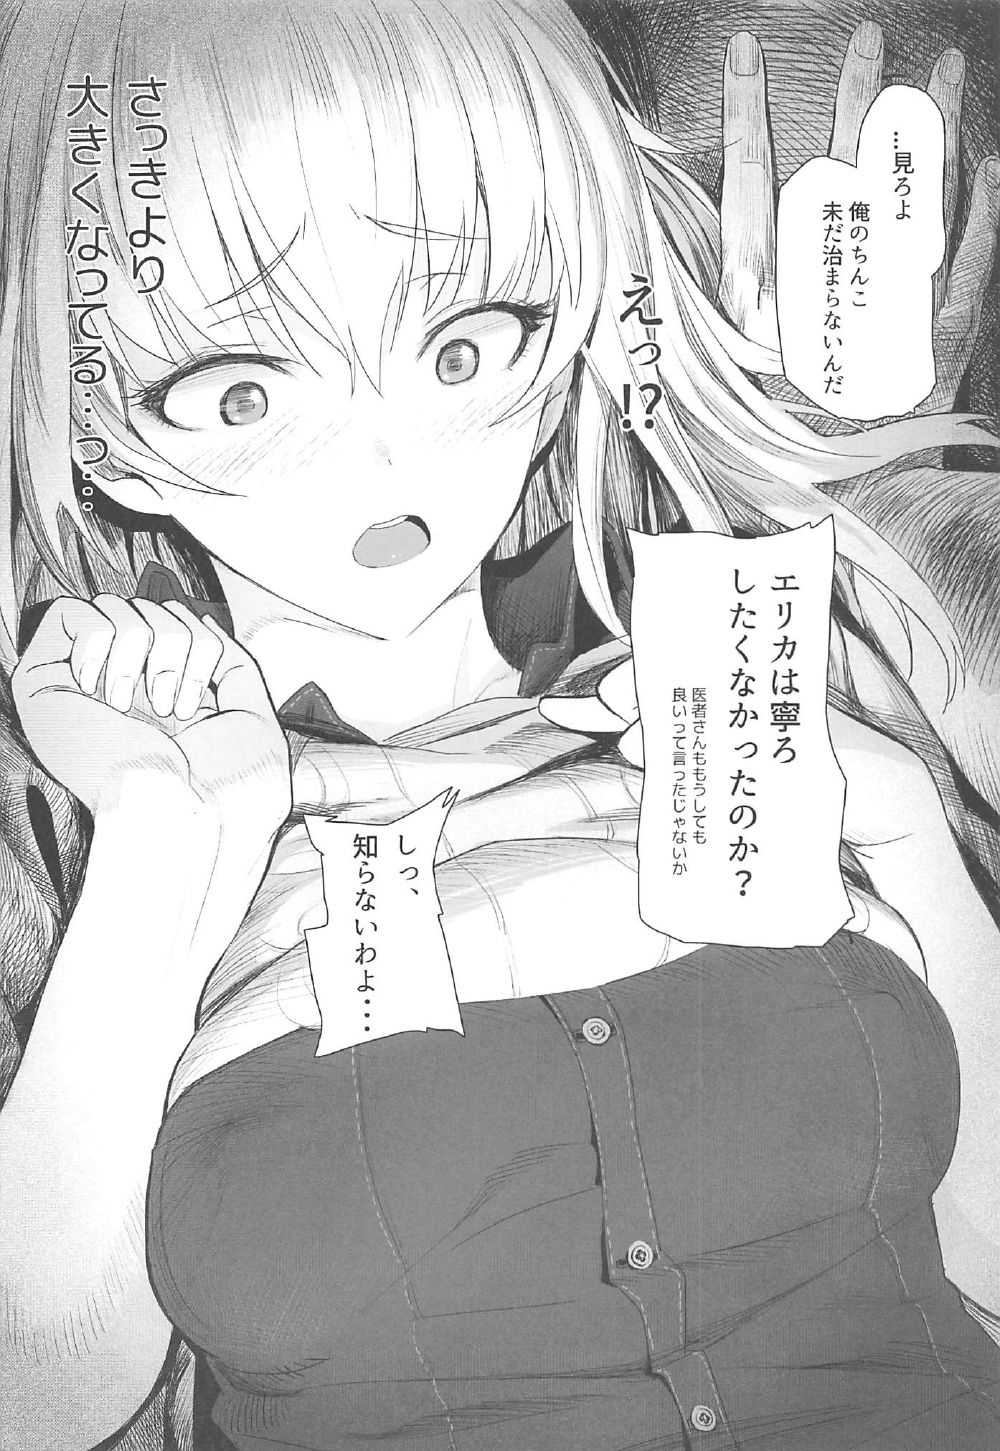 (C92) [SHIOHAMA (Hankotsu MAX)] ERIKA (Girls und Panzer) (C92) [SHIOHAMA (反骨MAX)] ERIKA (ガールズ&パンツァー)